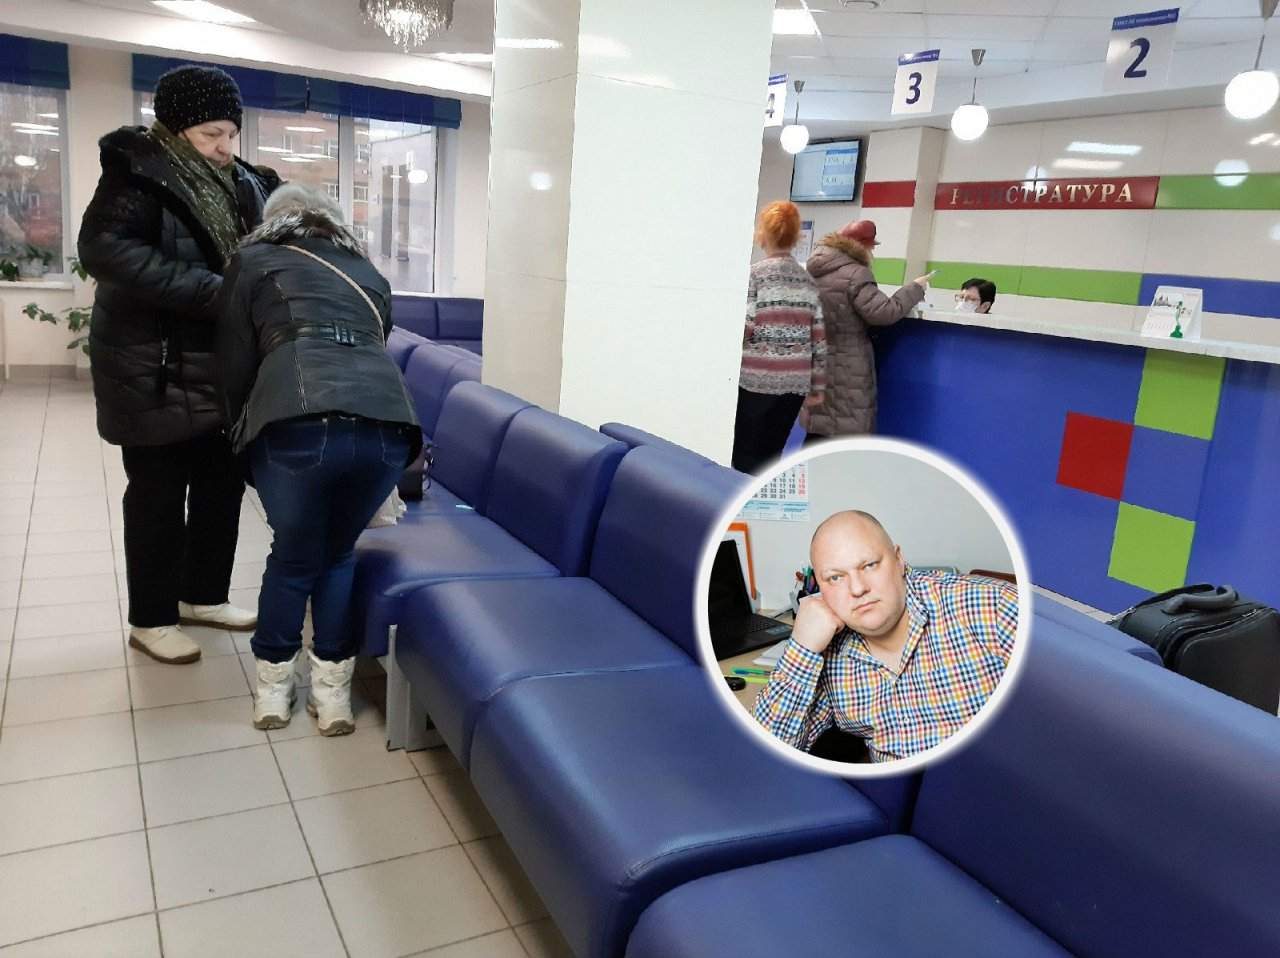 Нужно знать только этот номер: врач из Ярославля рассказал, как бороться с очередями в больницах